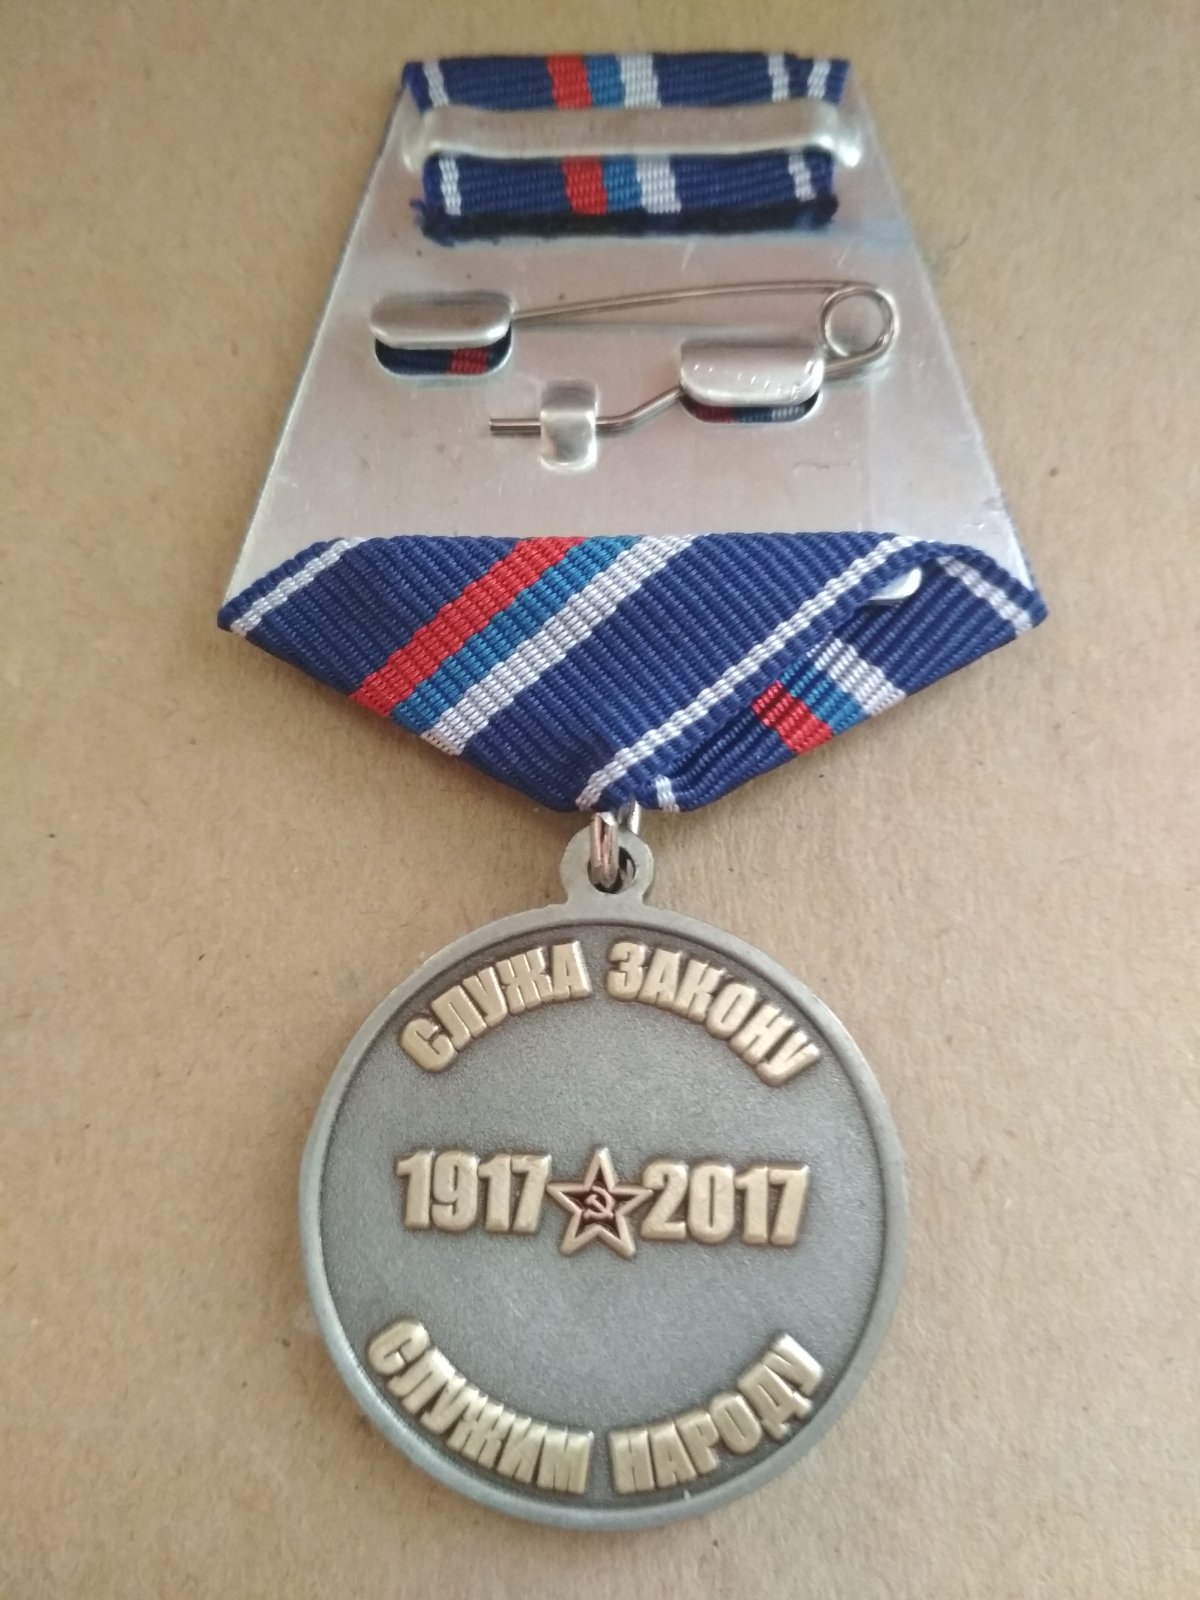 Медаль "100 лет советской милиции". "Служа закону - служим народу"